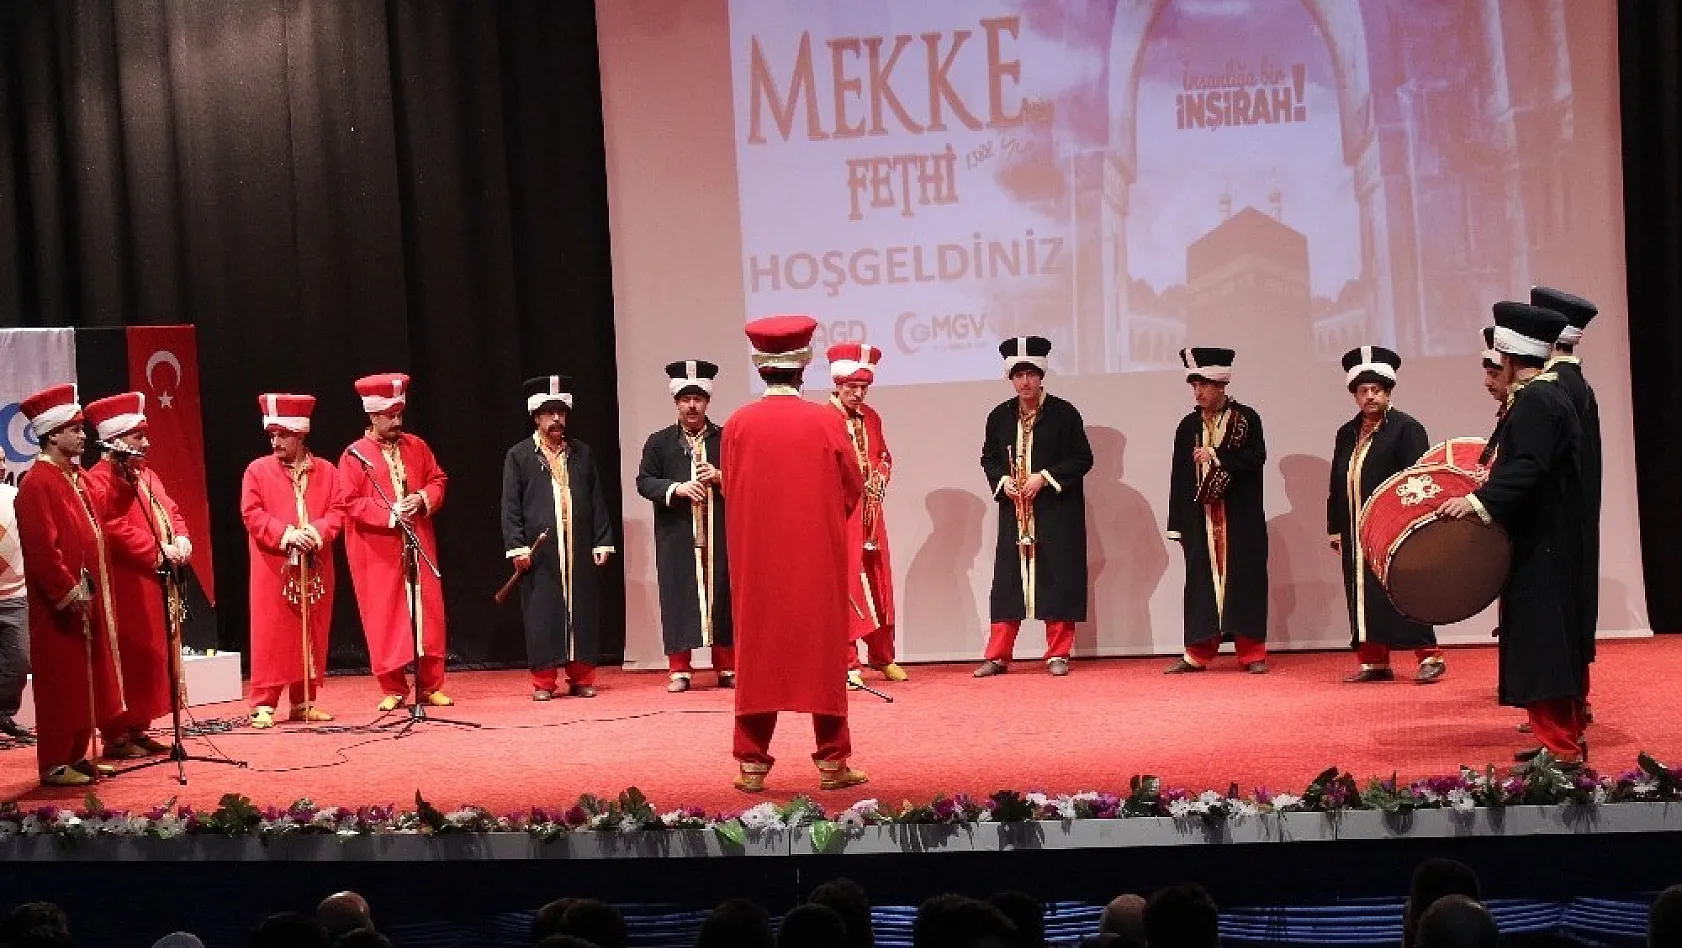 Elazığ'da Mekke'nin fethi programı 